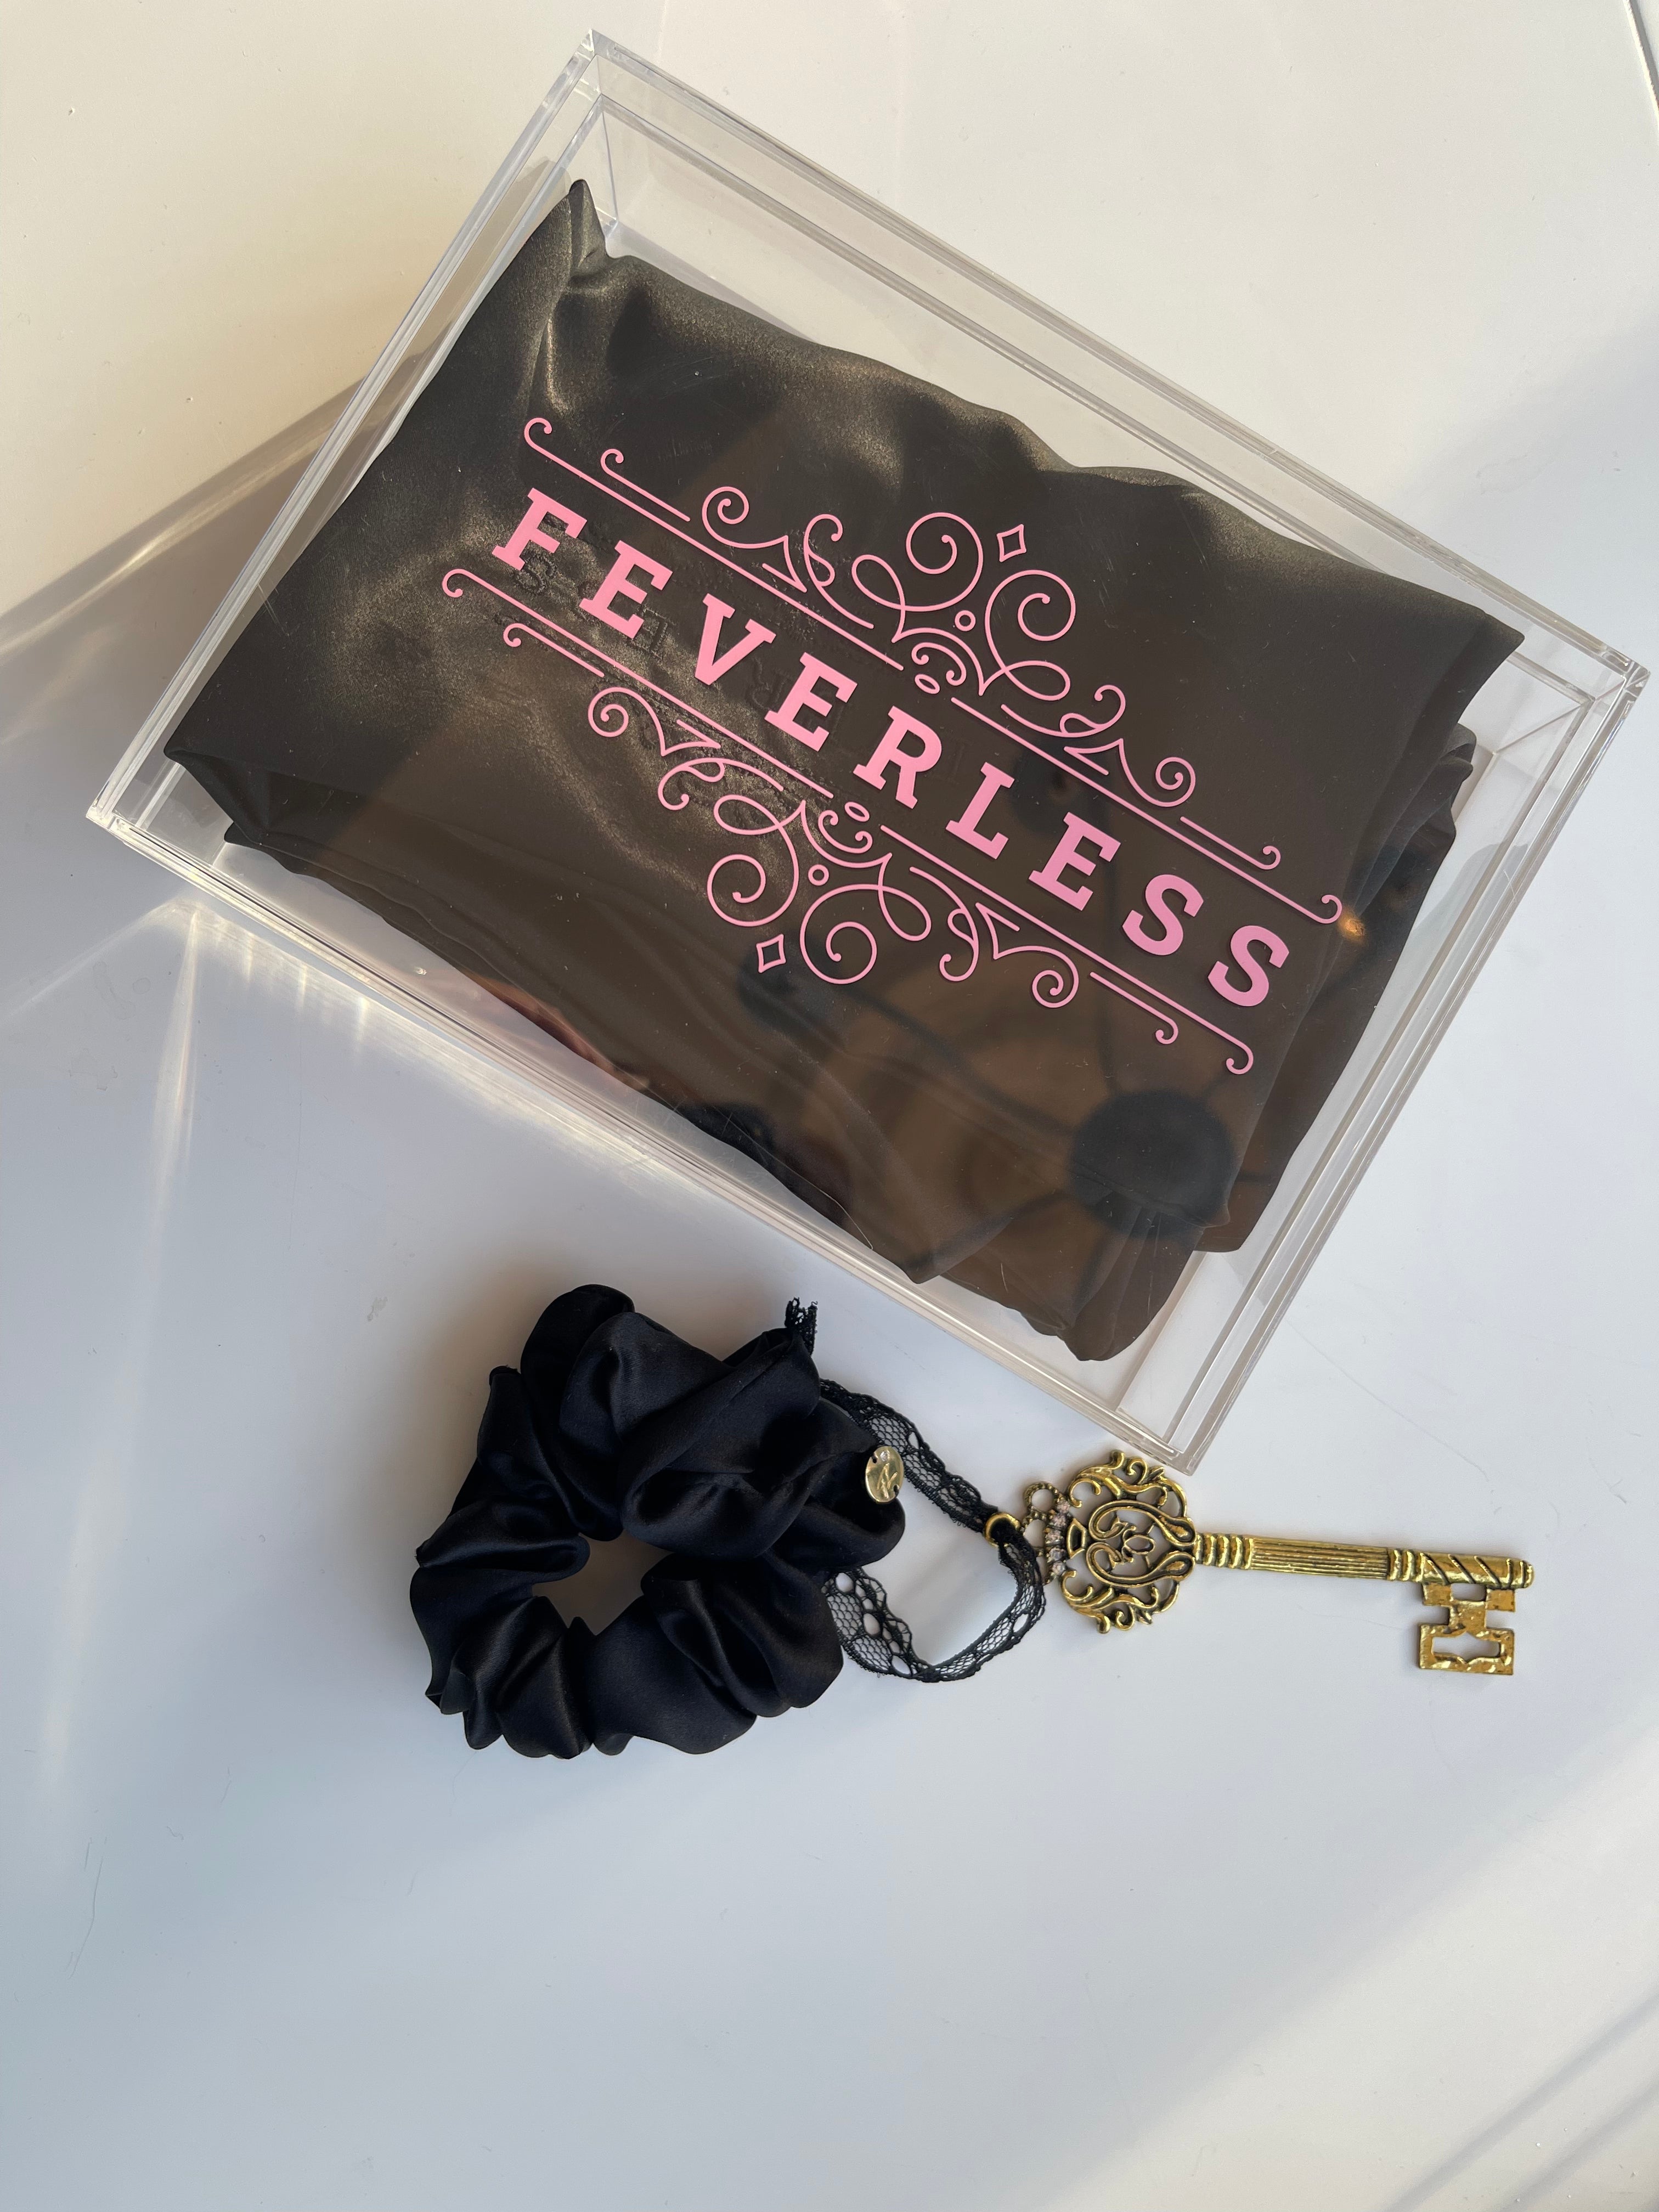 Funda de almohada bordada con el logo de FeverLess, de Seda Natural Mulberry con cierre de color negro